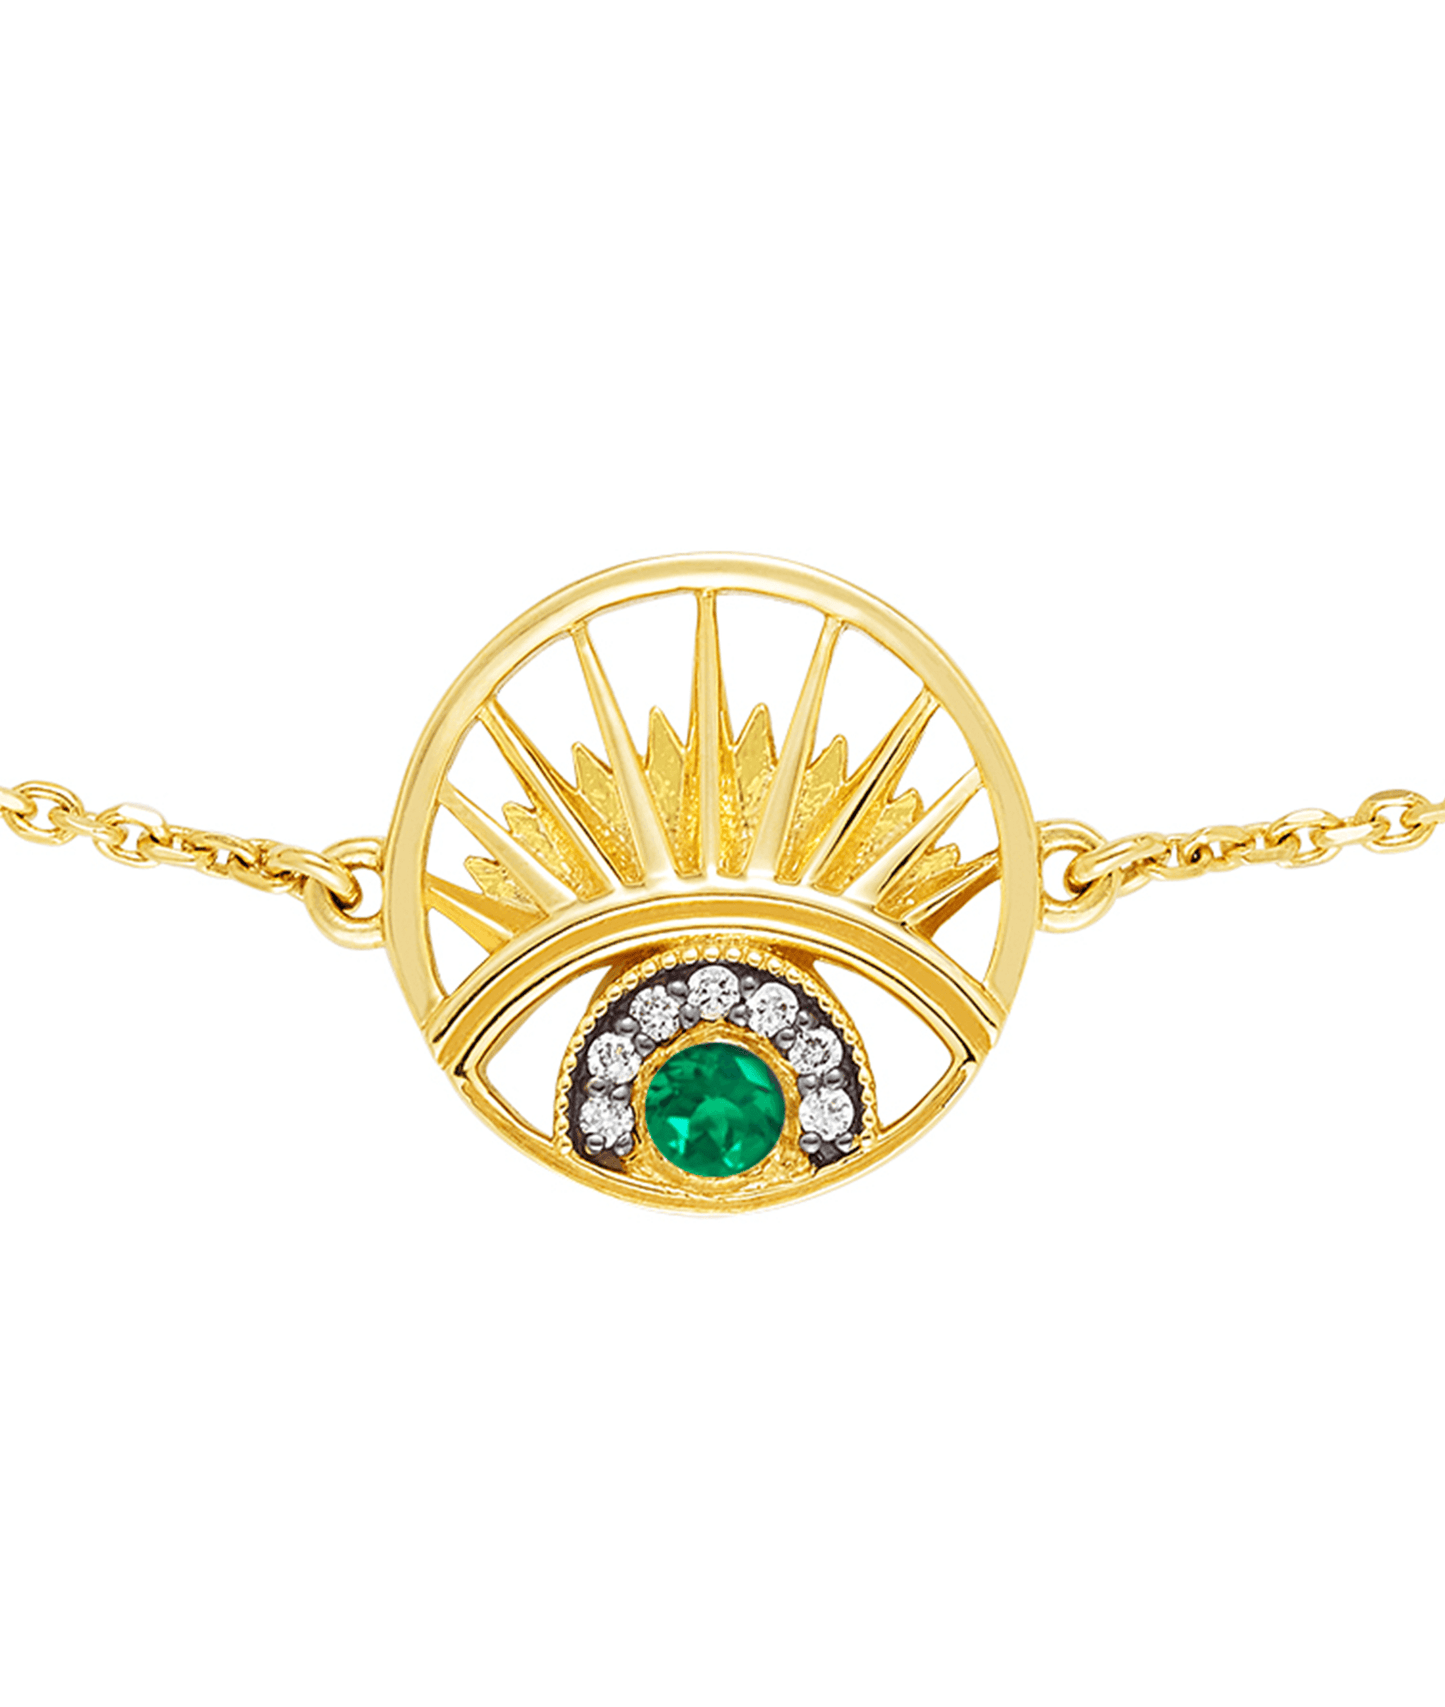 'Keep An Eye On Me' Bracelet Emerald - Wing of Wisdom